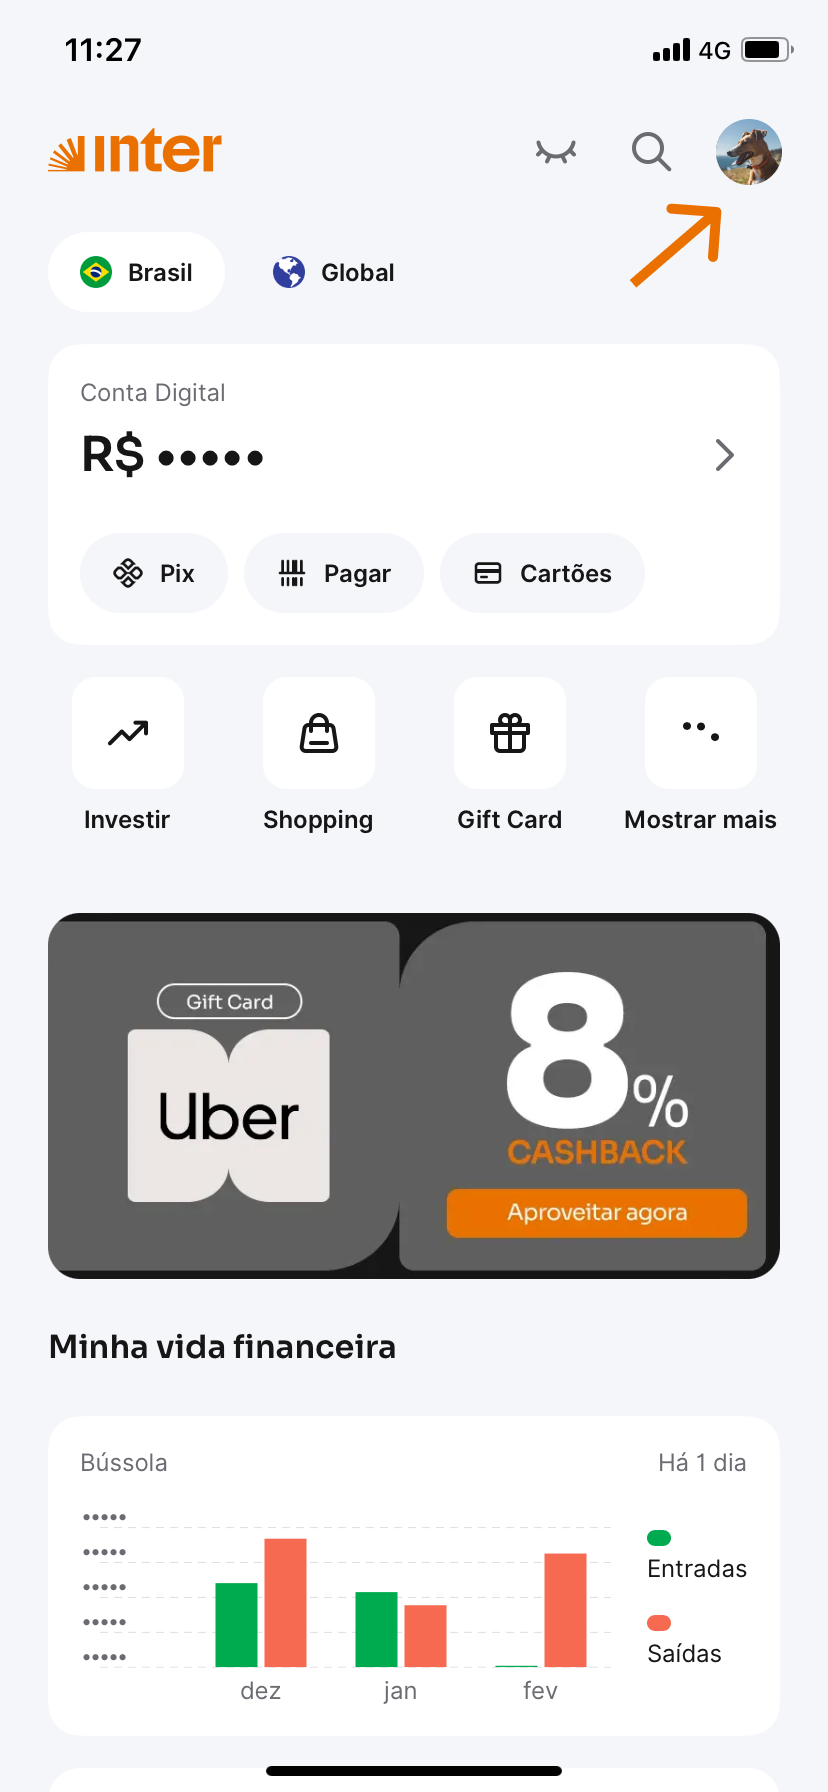 Tela do Super App do Inter com opções de acesso rápido 